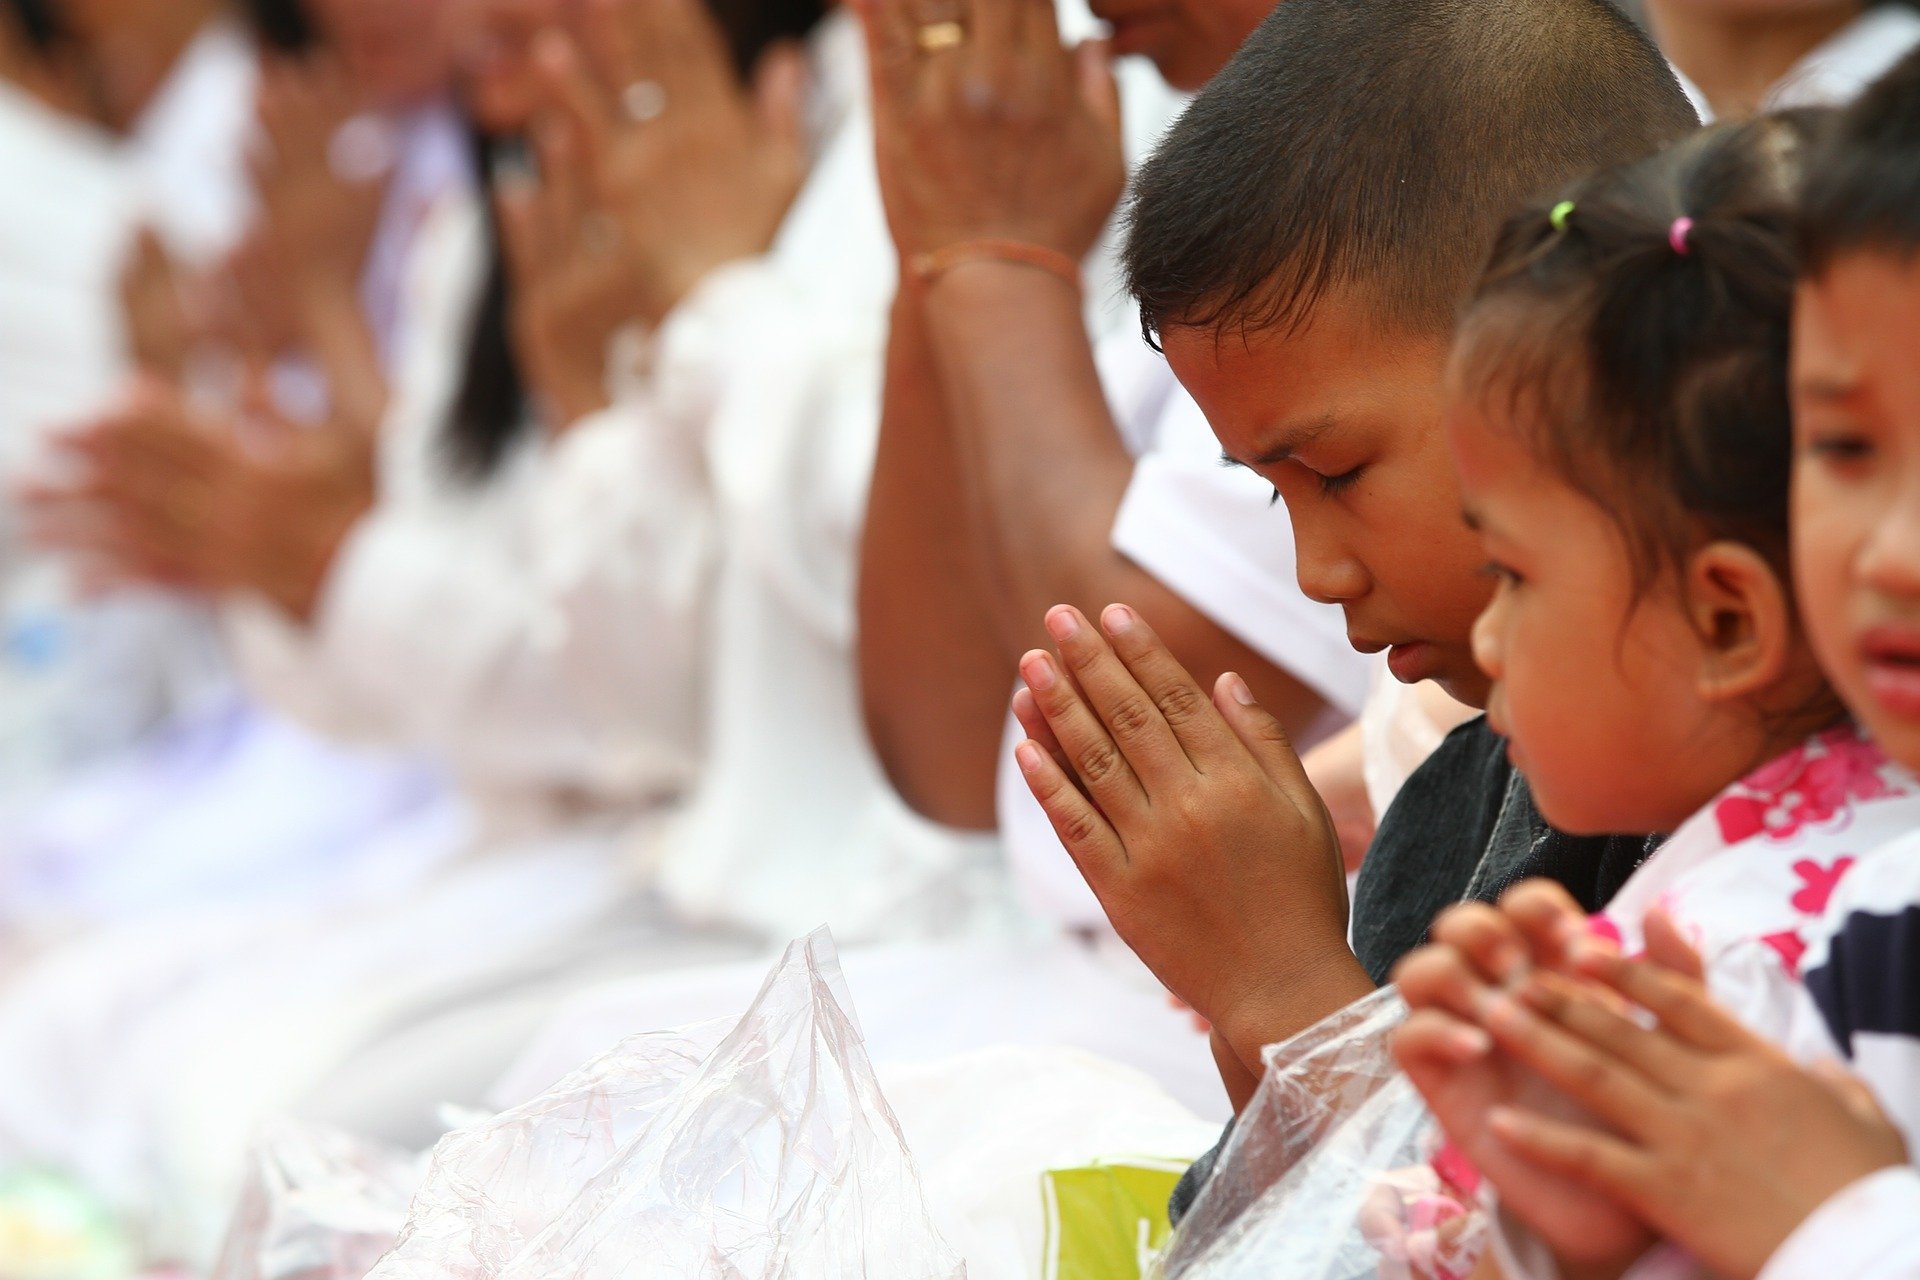 Grupo de pessoas vestindo branco, todas com as mãos unidas em sinal de oração